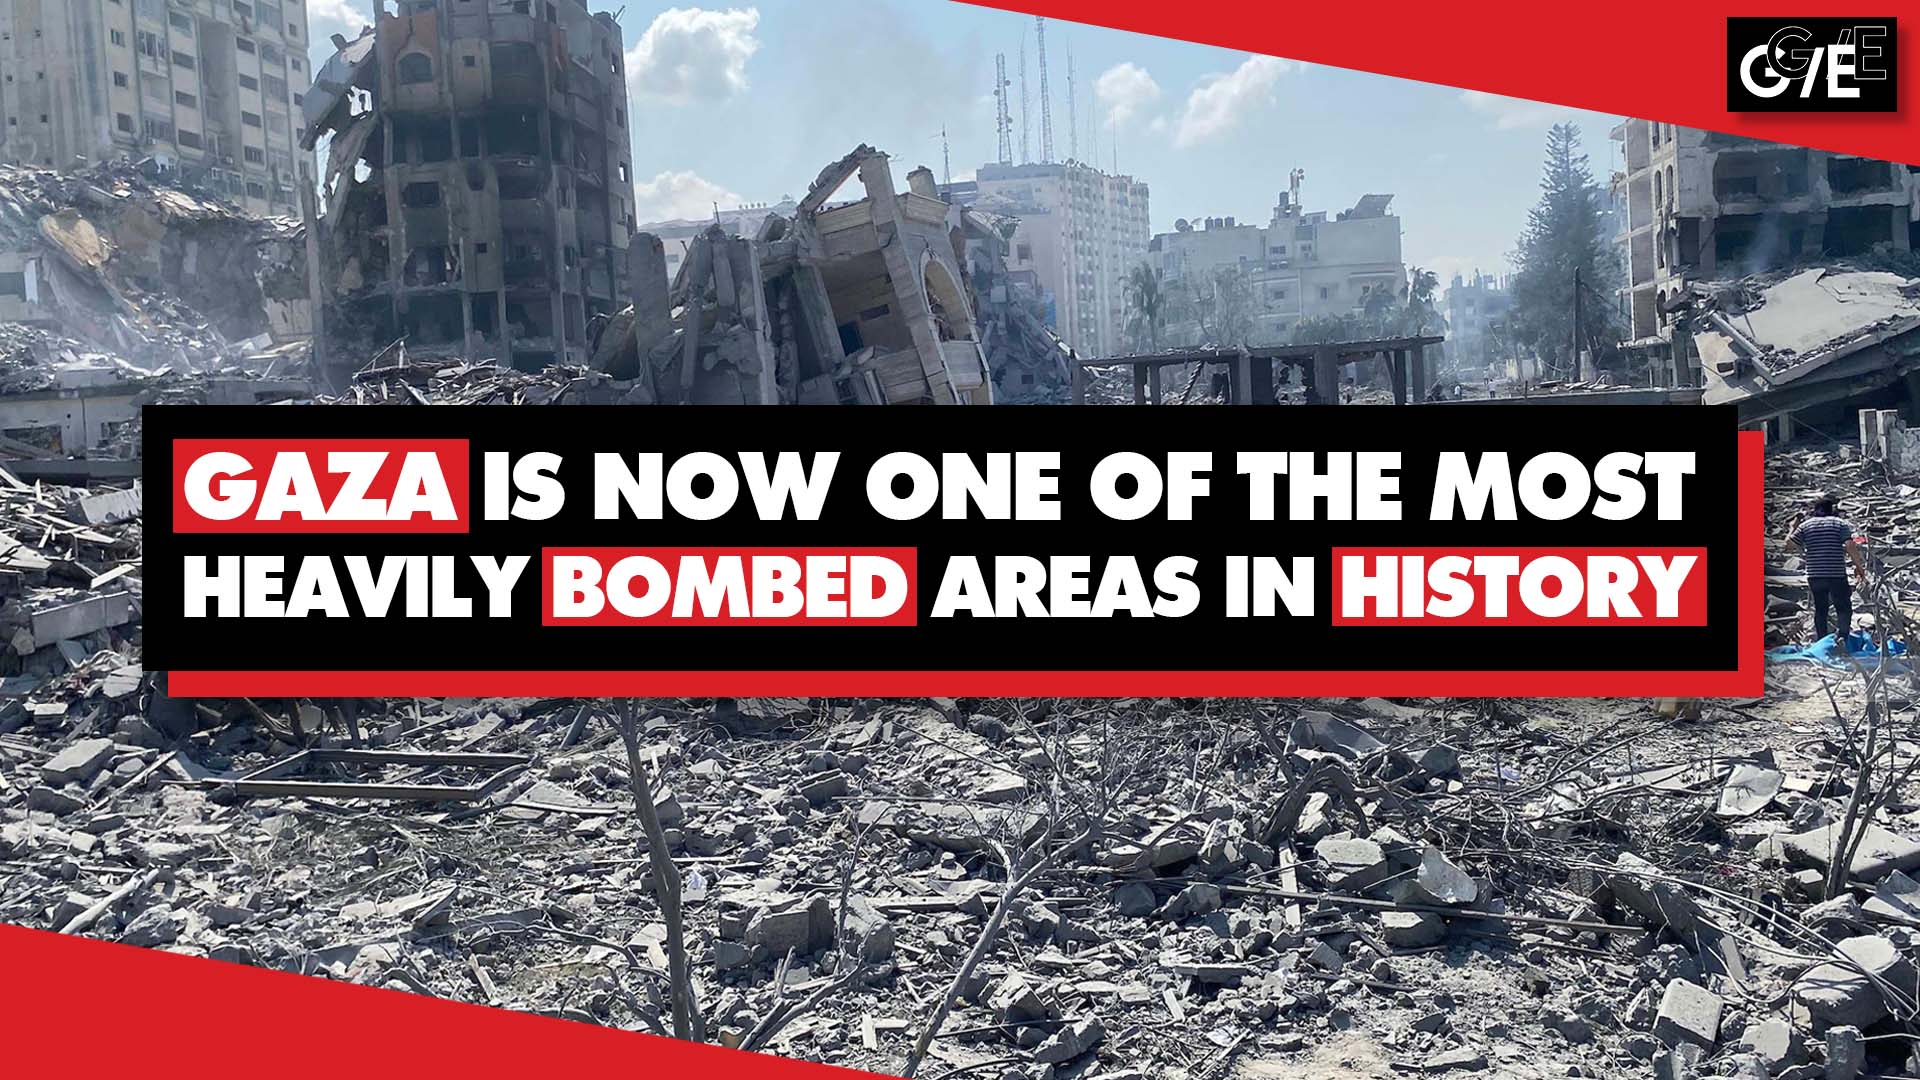 Gaza most heavily bombed area history